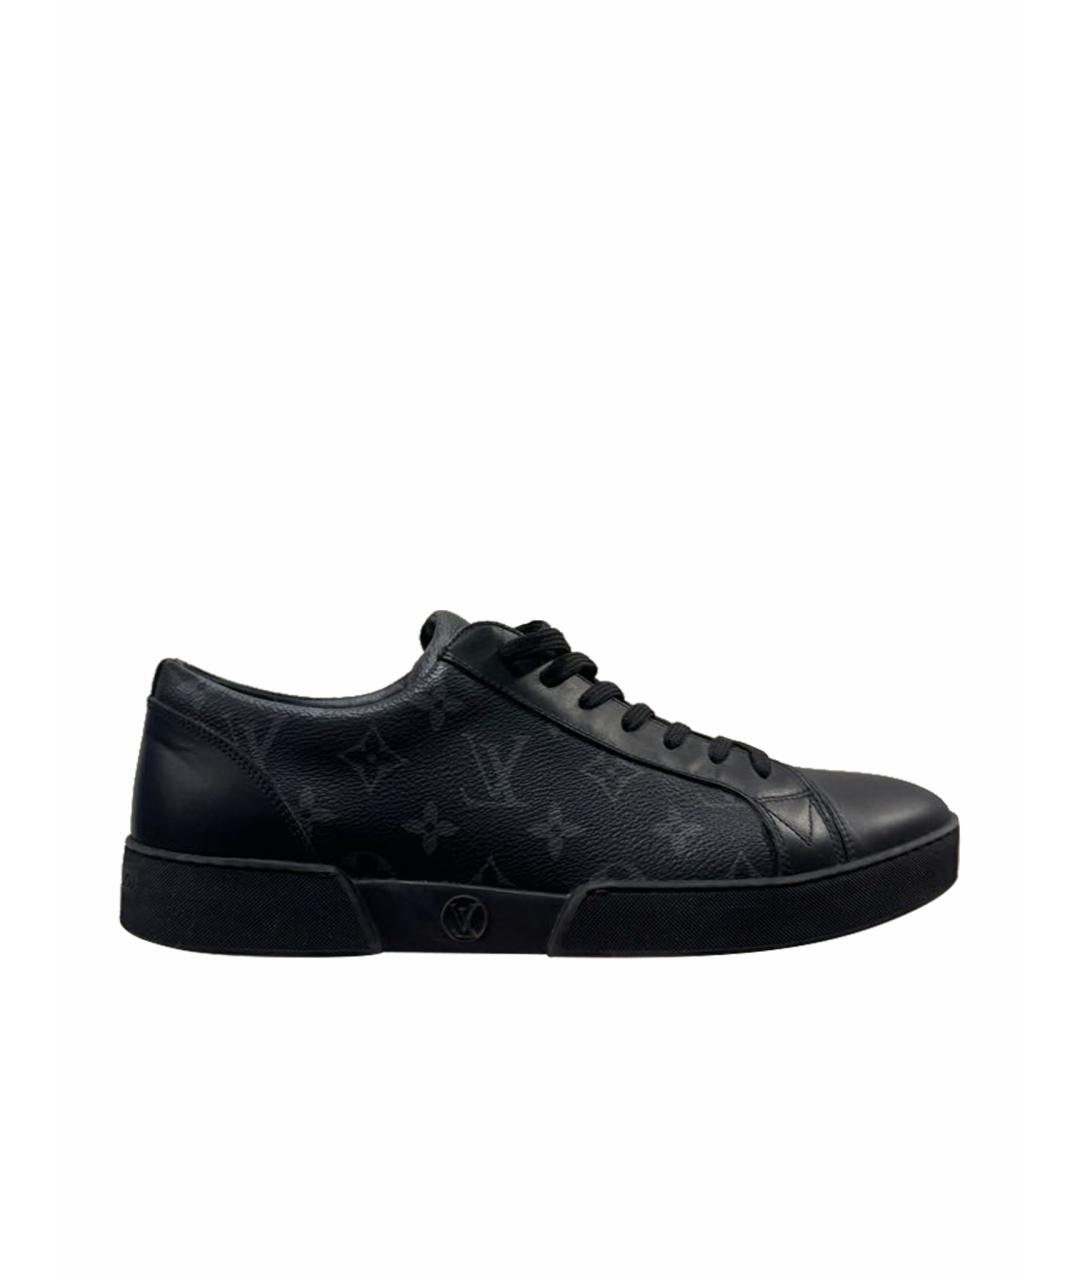 LOUIS VUITTON PRE-OWNED Черные кожаные высокие кроссовки / кеды, фото 1